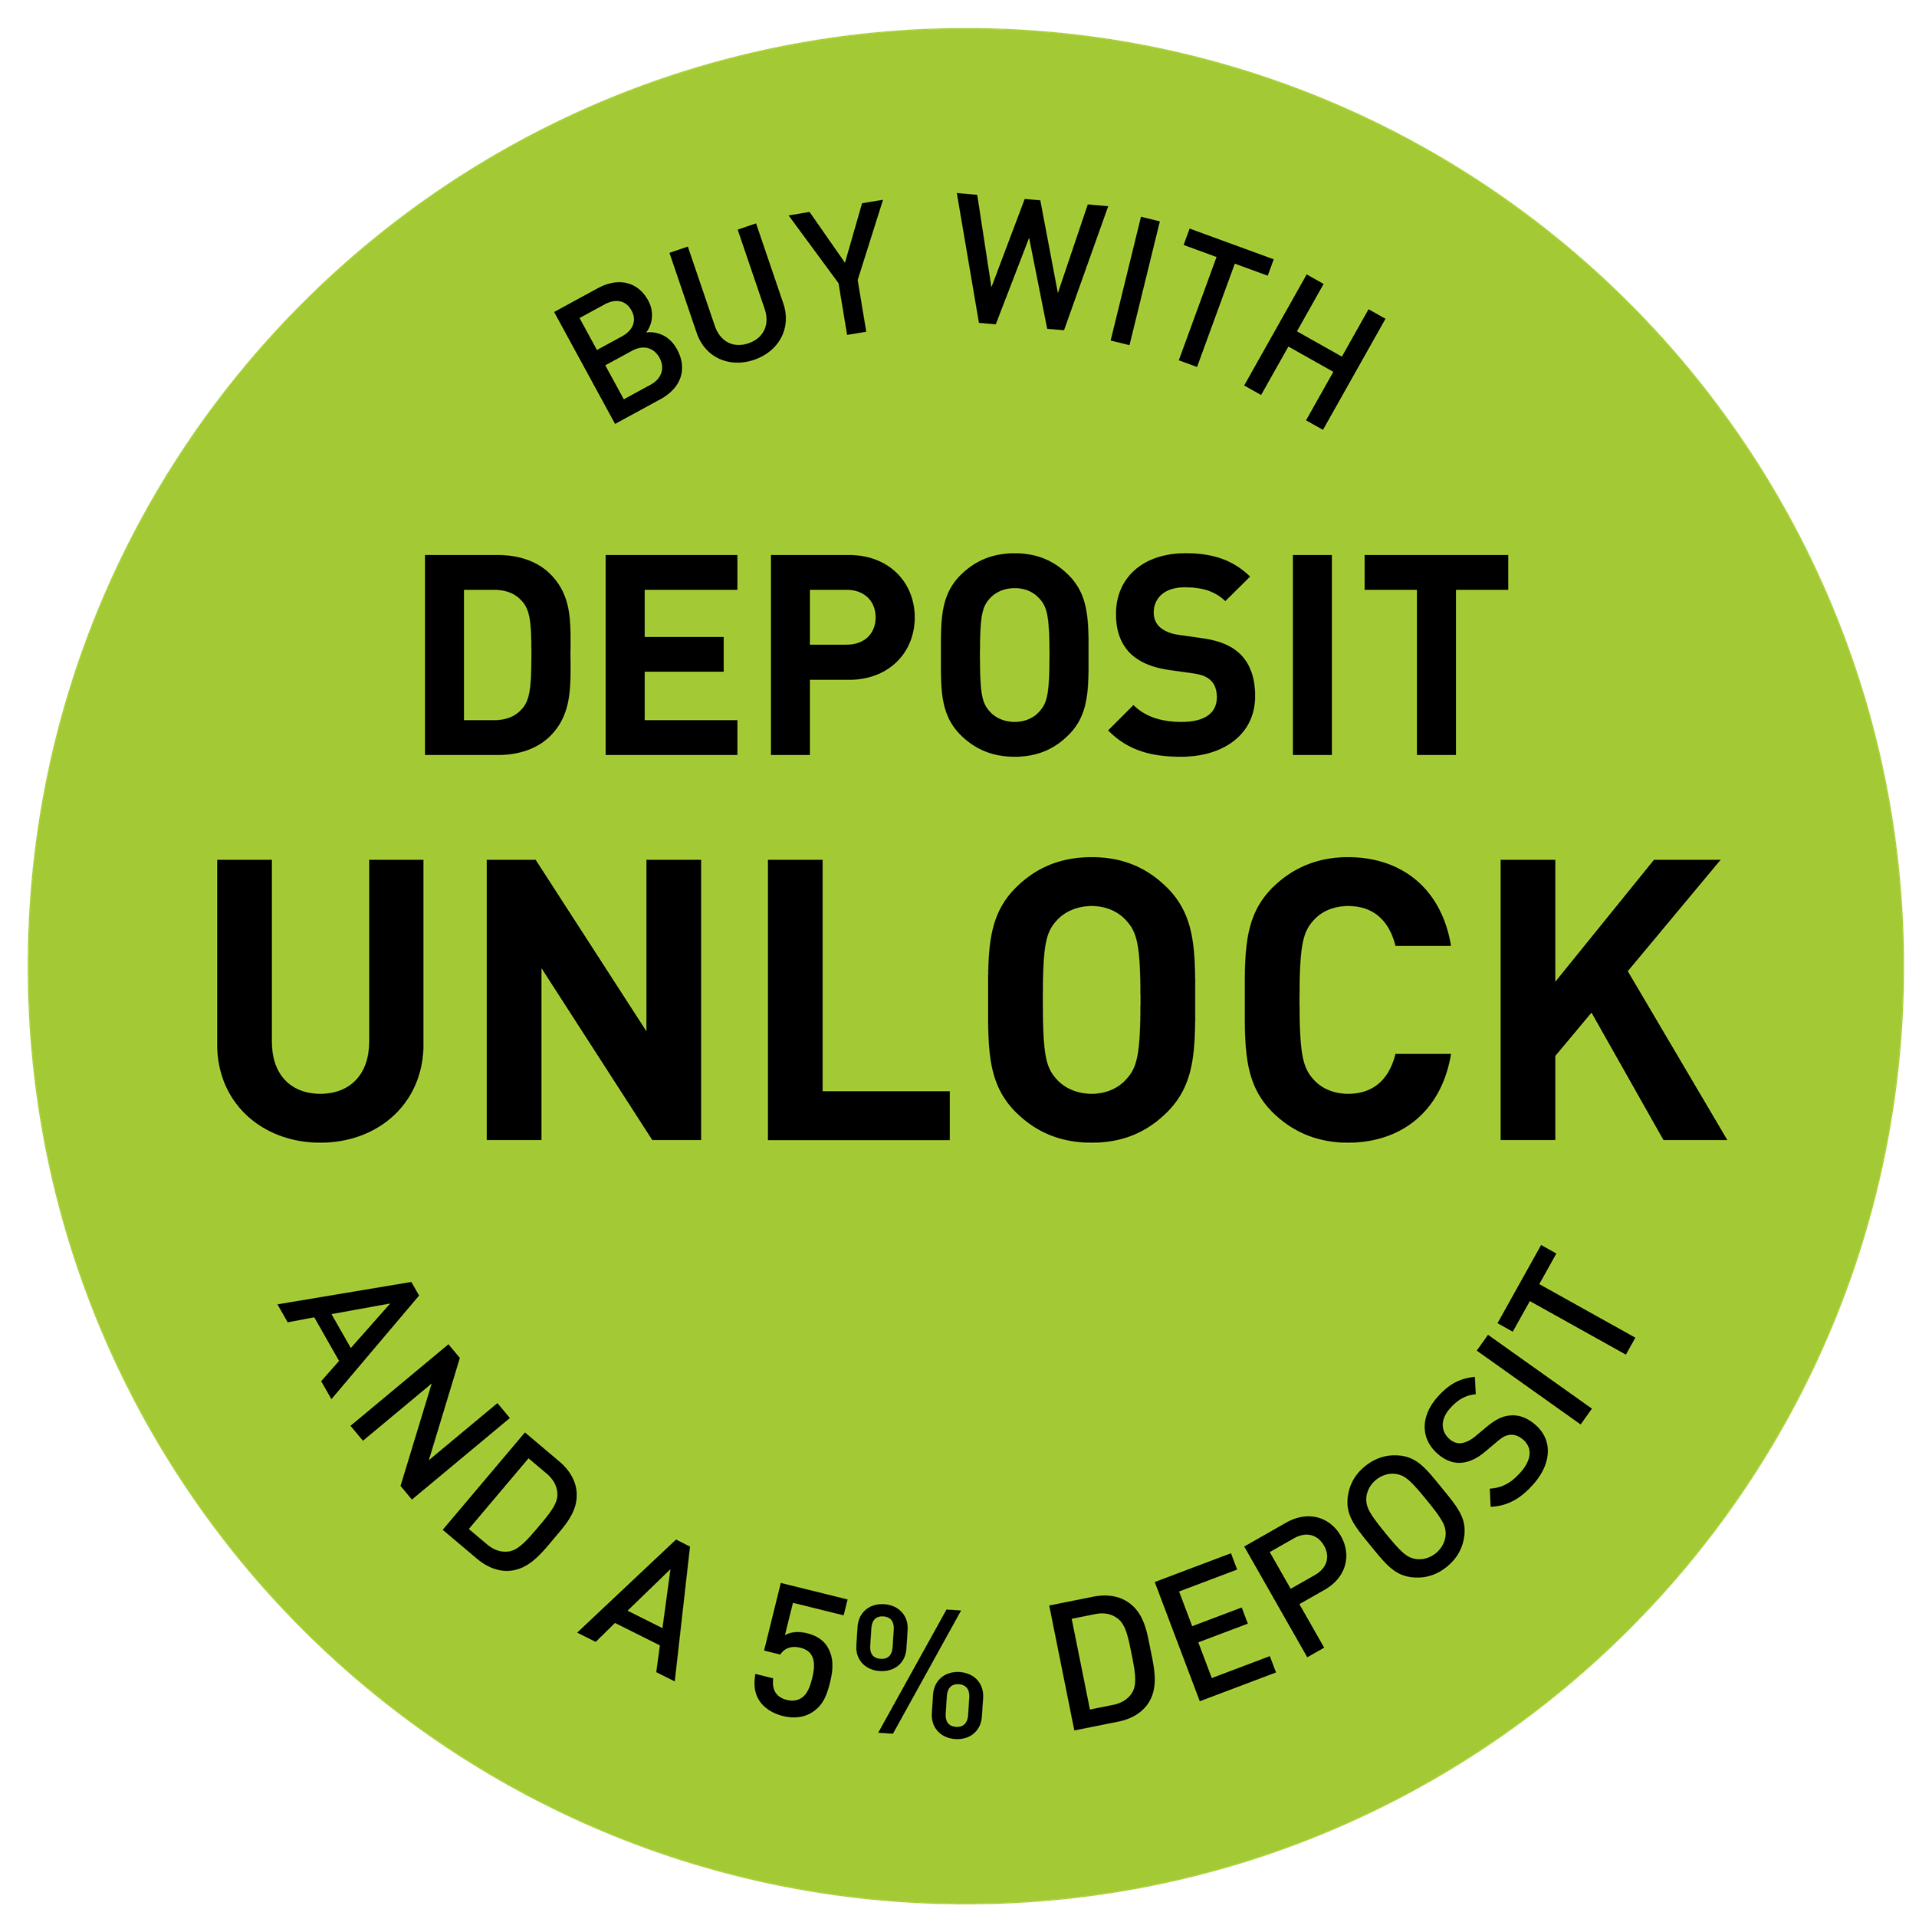 Deposit Unlock Lockup - Barratt Homes